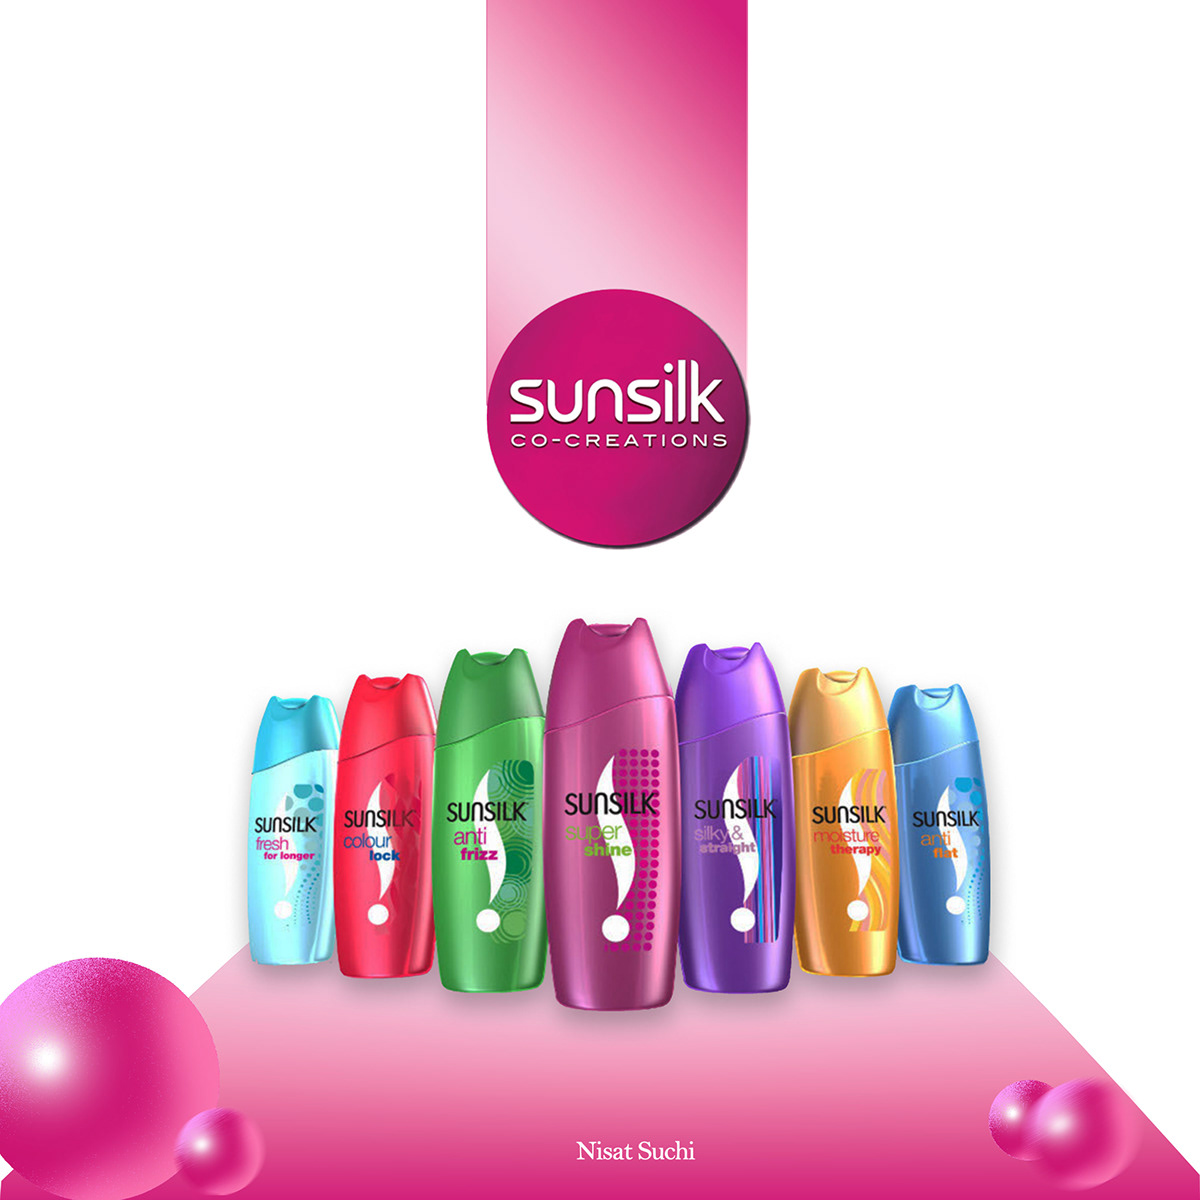 Sunsilk sunsilk shampoo shampoo hair pink poster Graphic Designer Social media post Socialmedia designer